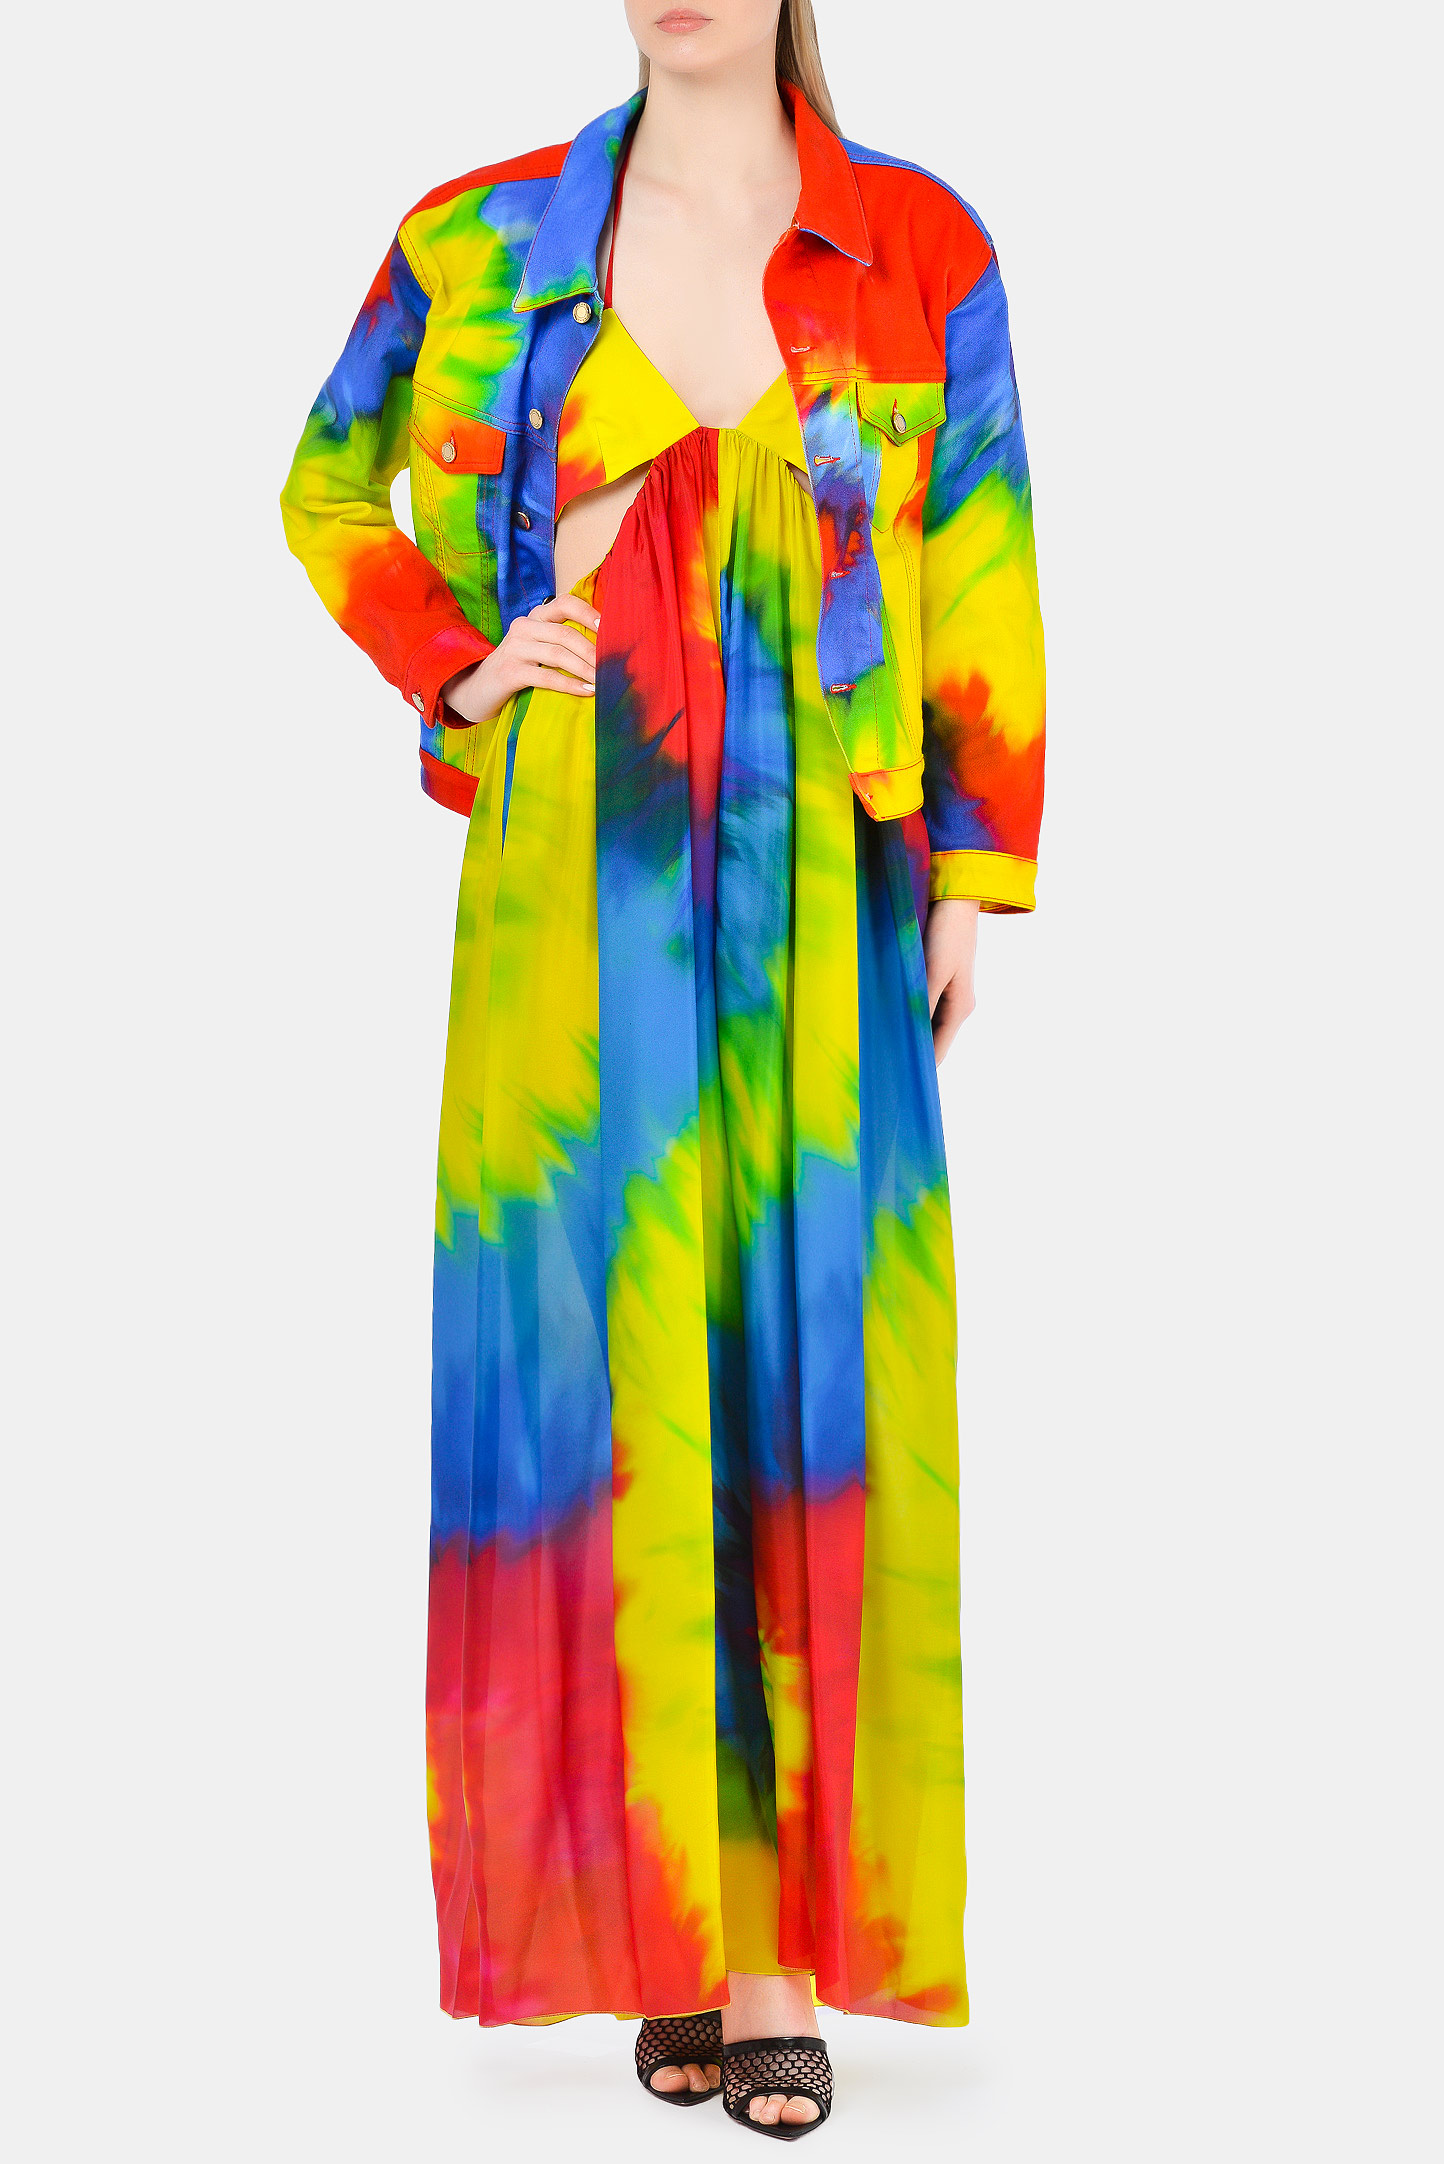 Куртка  ALEXANDRE VAUTHIER 211JA1400, цвет: Разноцветный, Женский